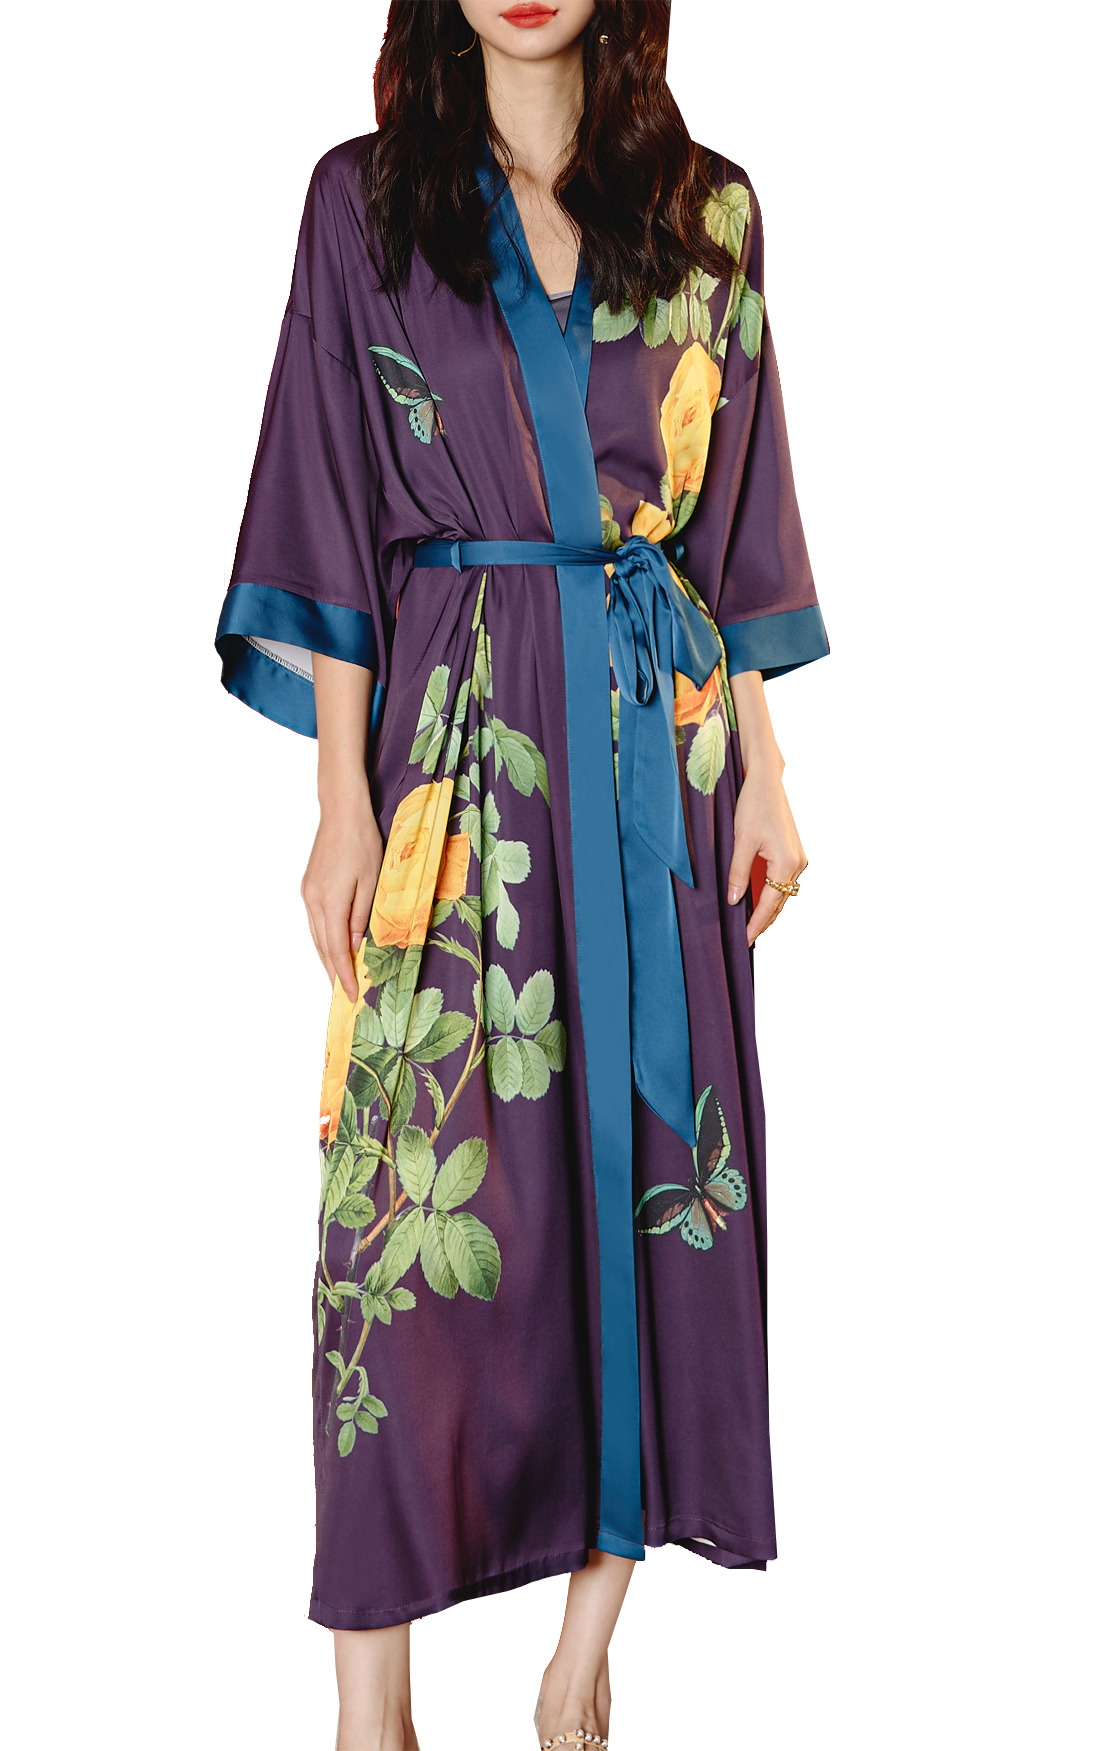 Kadın saten pijama kimono giyinme elbisesi zarif uzun düğün nedime çobanı gece kıyafetleri vnes boynu üç çeyrek kollu kemer salonu pijamalar